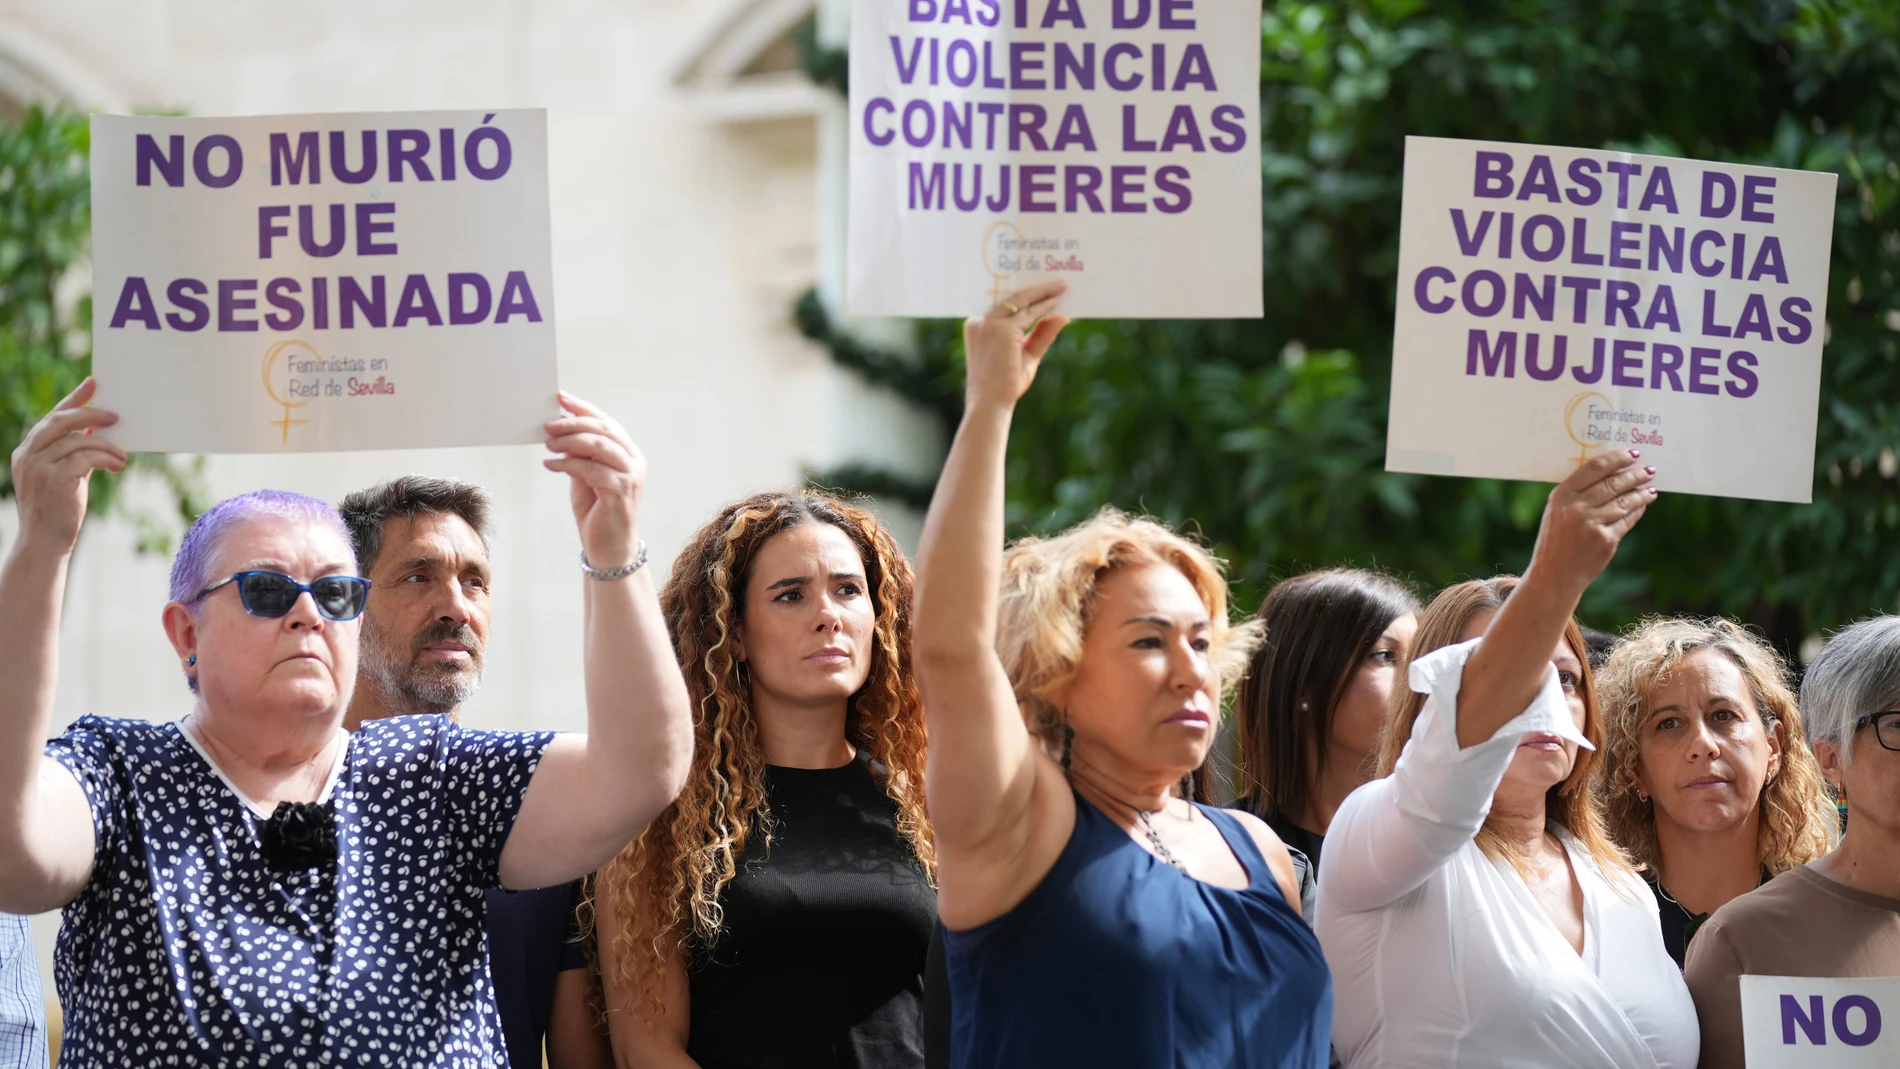 Minuto de silencio por una víctima en Sevilla